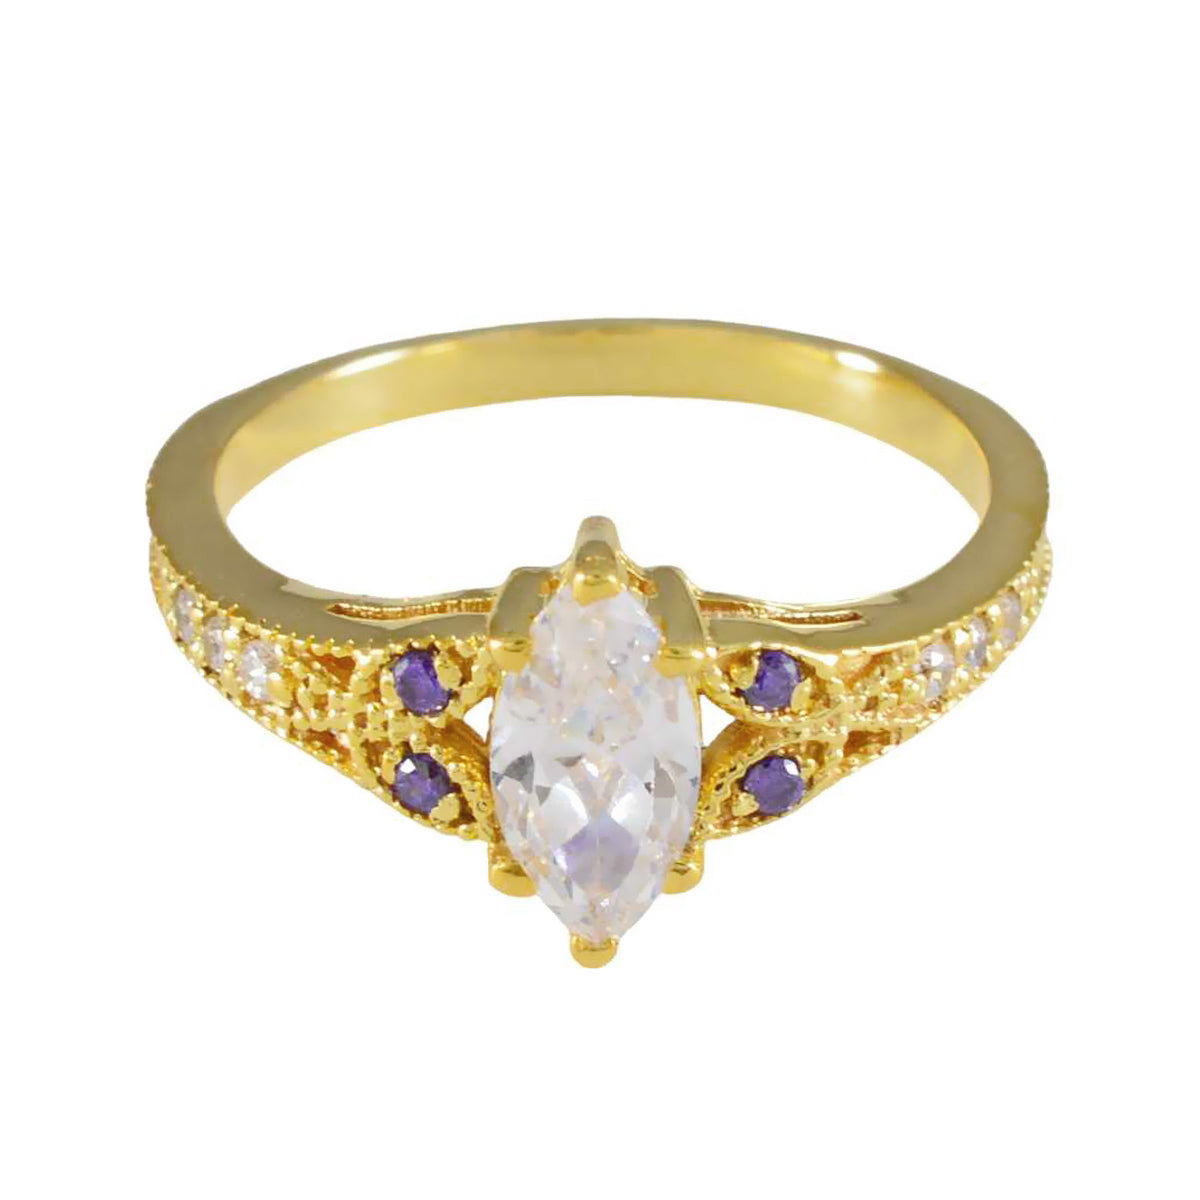 Антикварное серебряное кольцо riyo с покрытием из желтого золота, аметист, камень маркиза, закрепка зубца, модные украшения, кольцо на день рождения